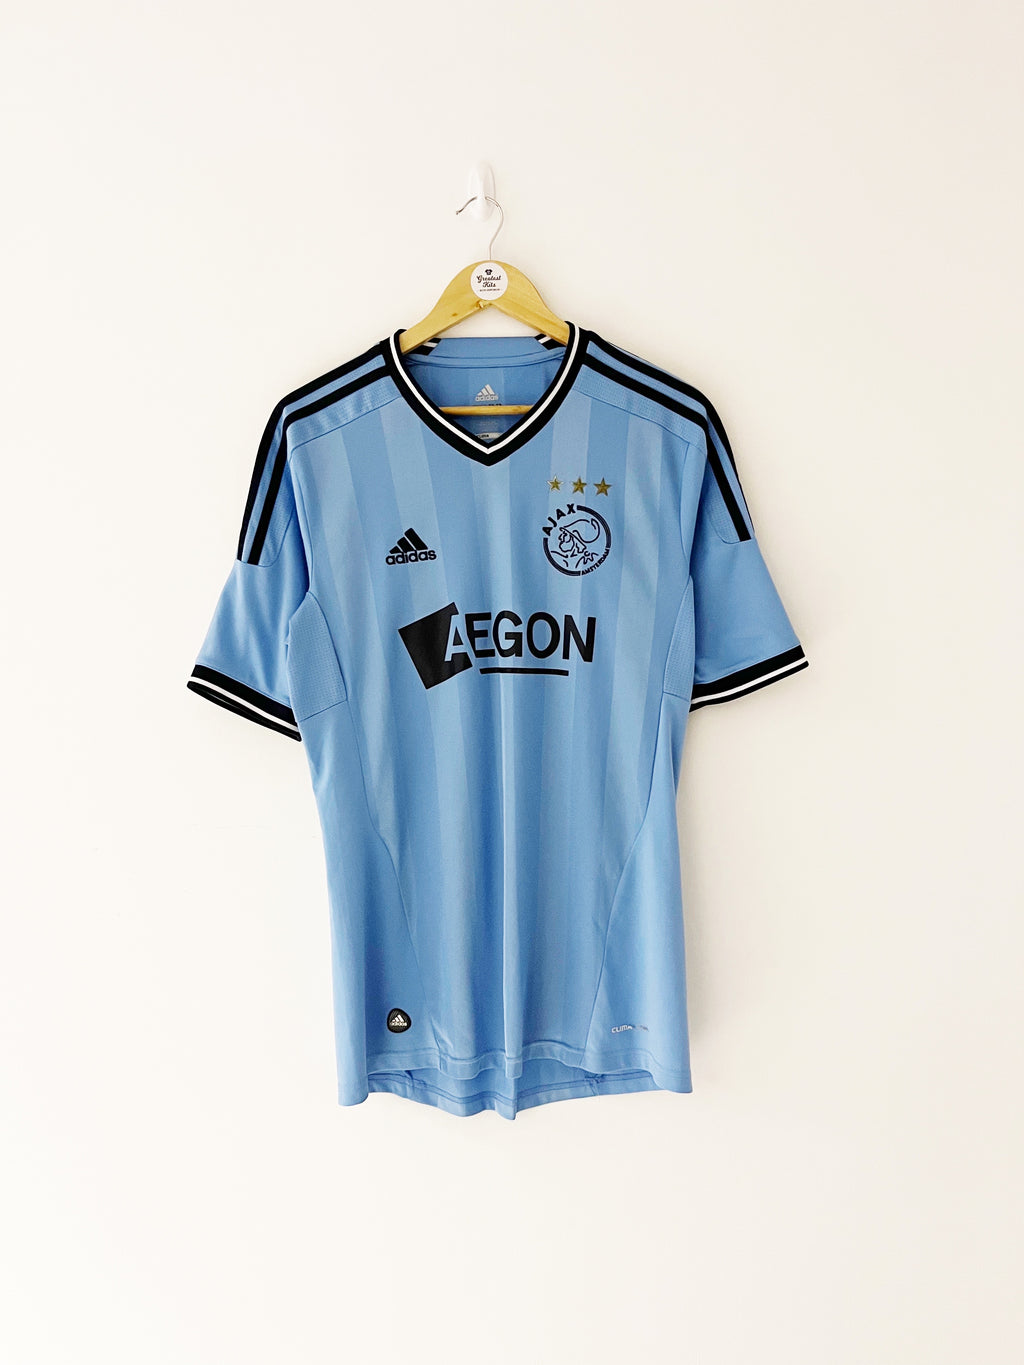 2011/12 Ajax Away Shirt (M) 9/10